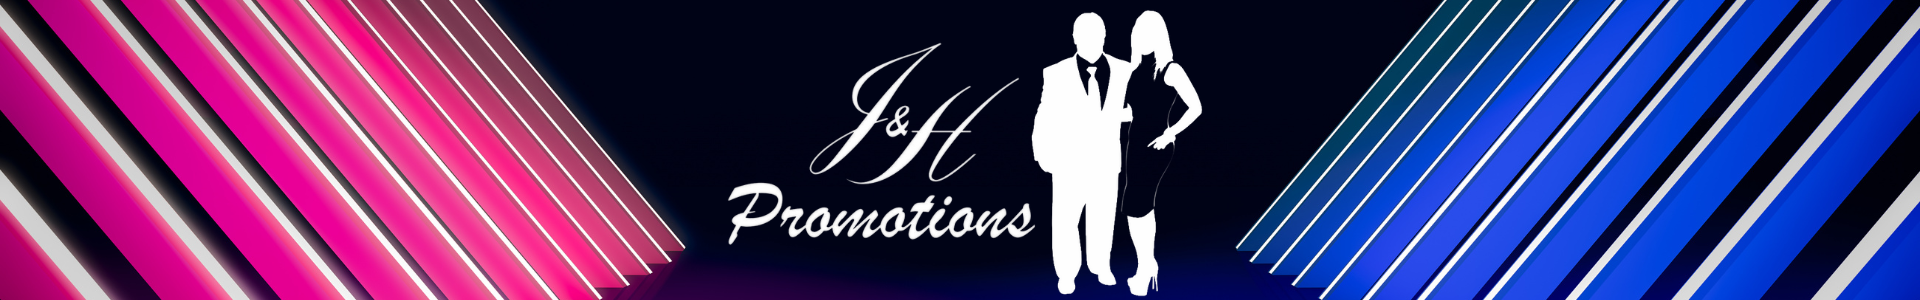 J&H Promotions Inc.